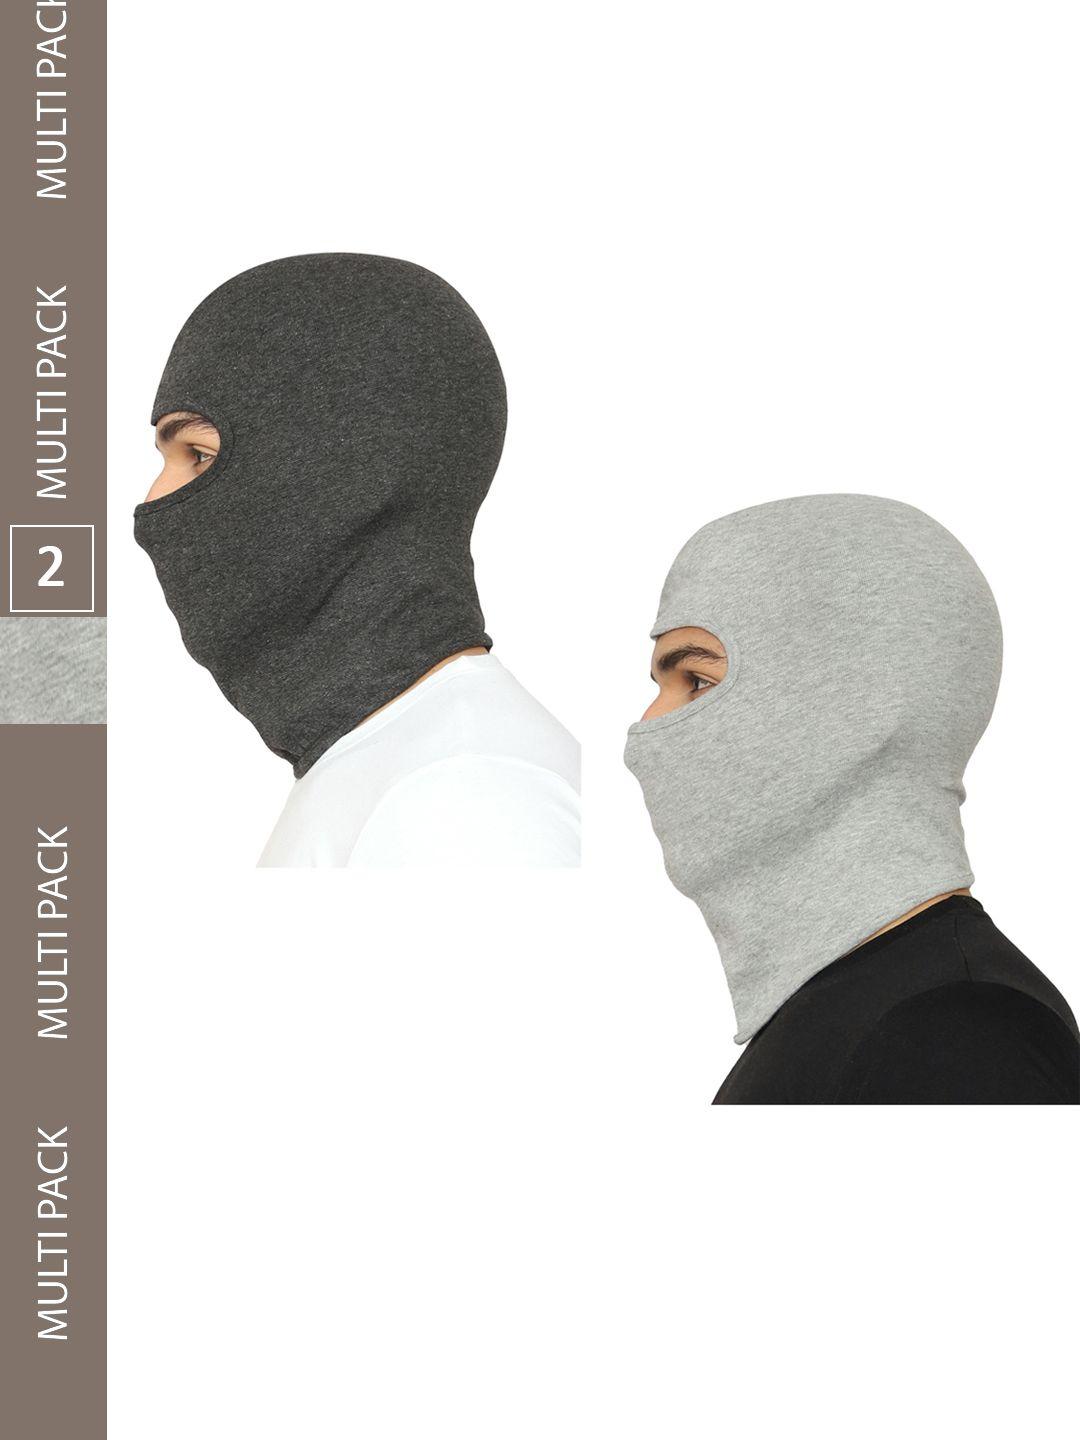 gajraj pack of 2 reusable face masks